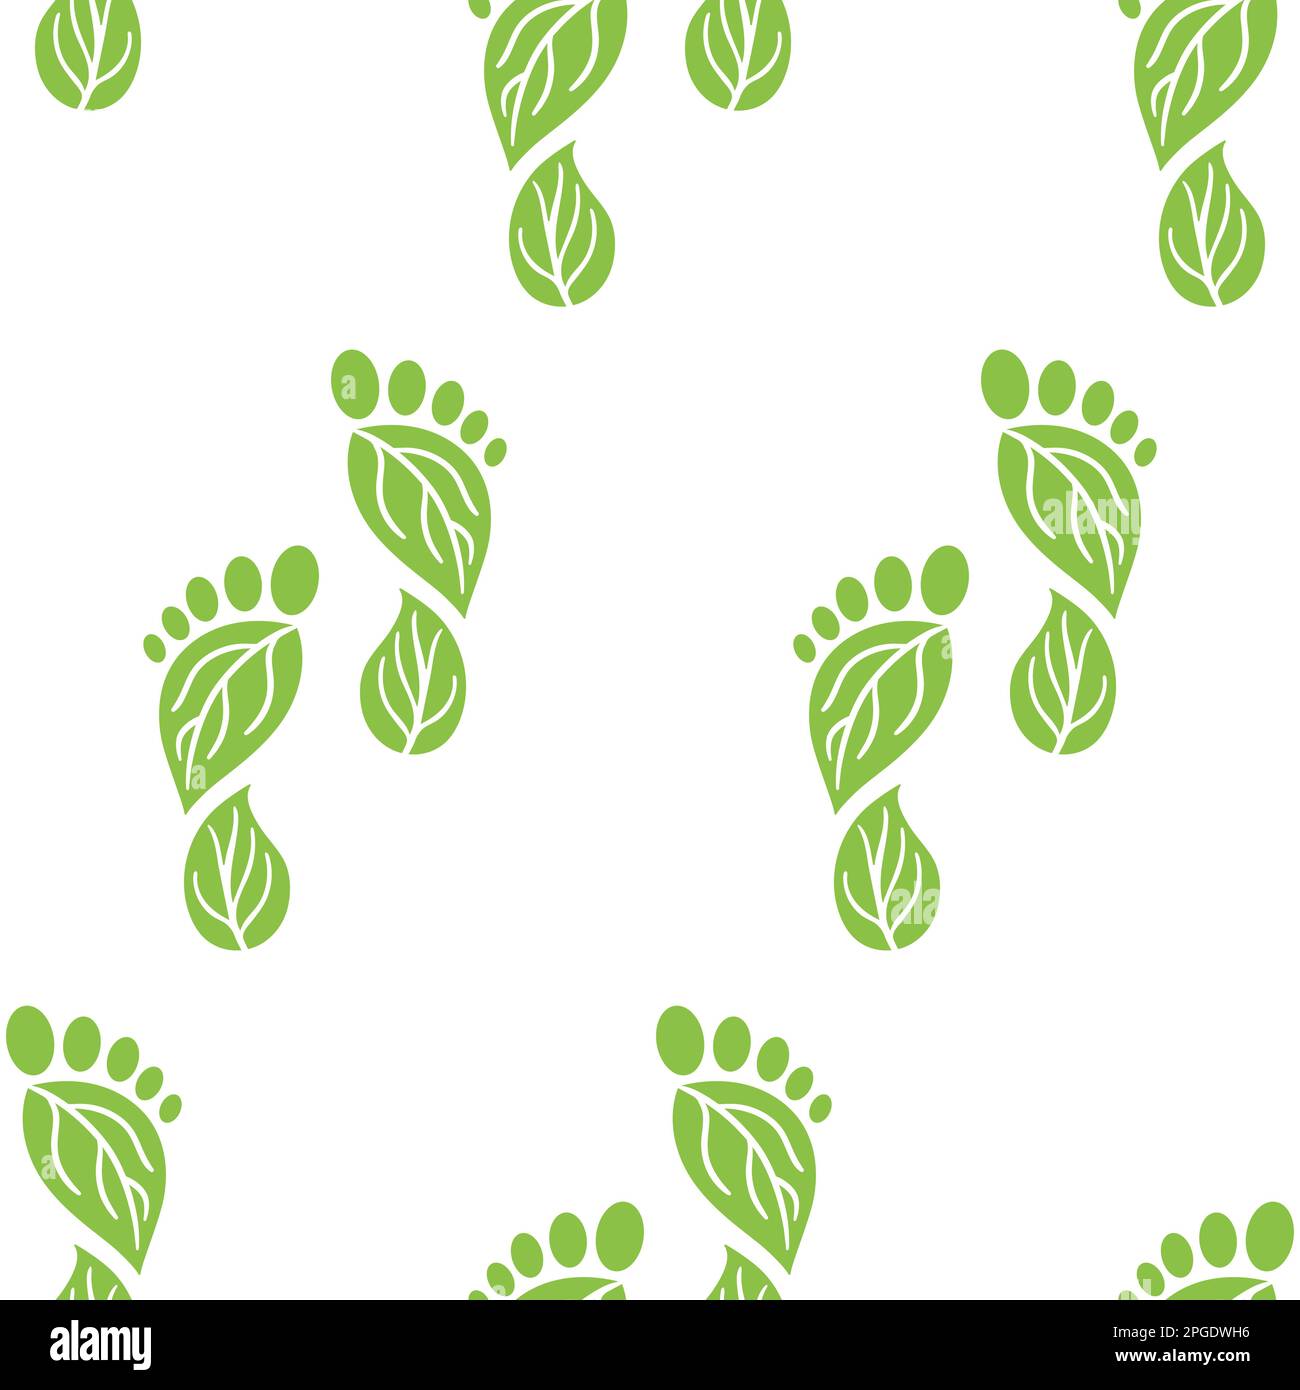 Motif transparent des icônes d'empreinte carbone. CO2 symboles d'empreinte écologique avec des feuilles vertes. Émissions de gaz à effet de serre. Environnement et climat cha Illustration de Vecteur